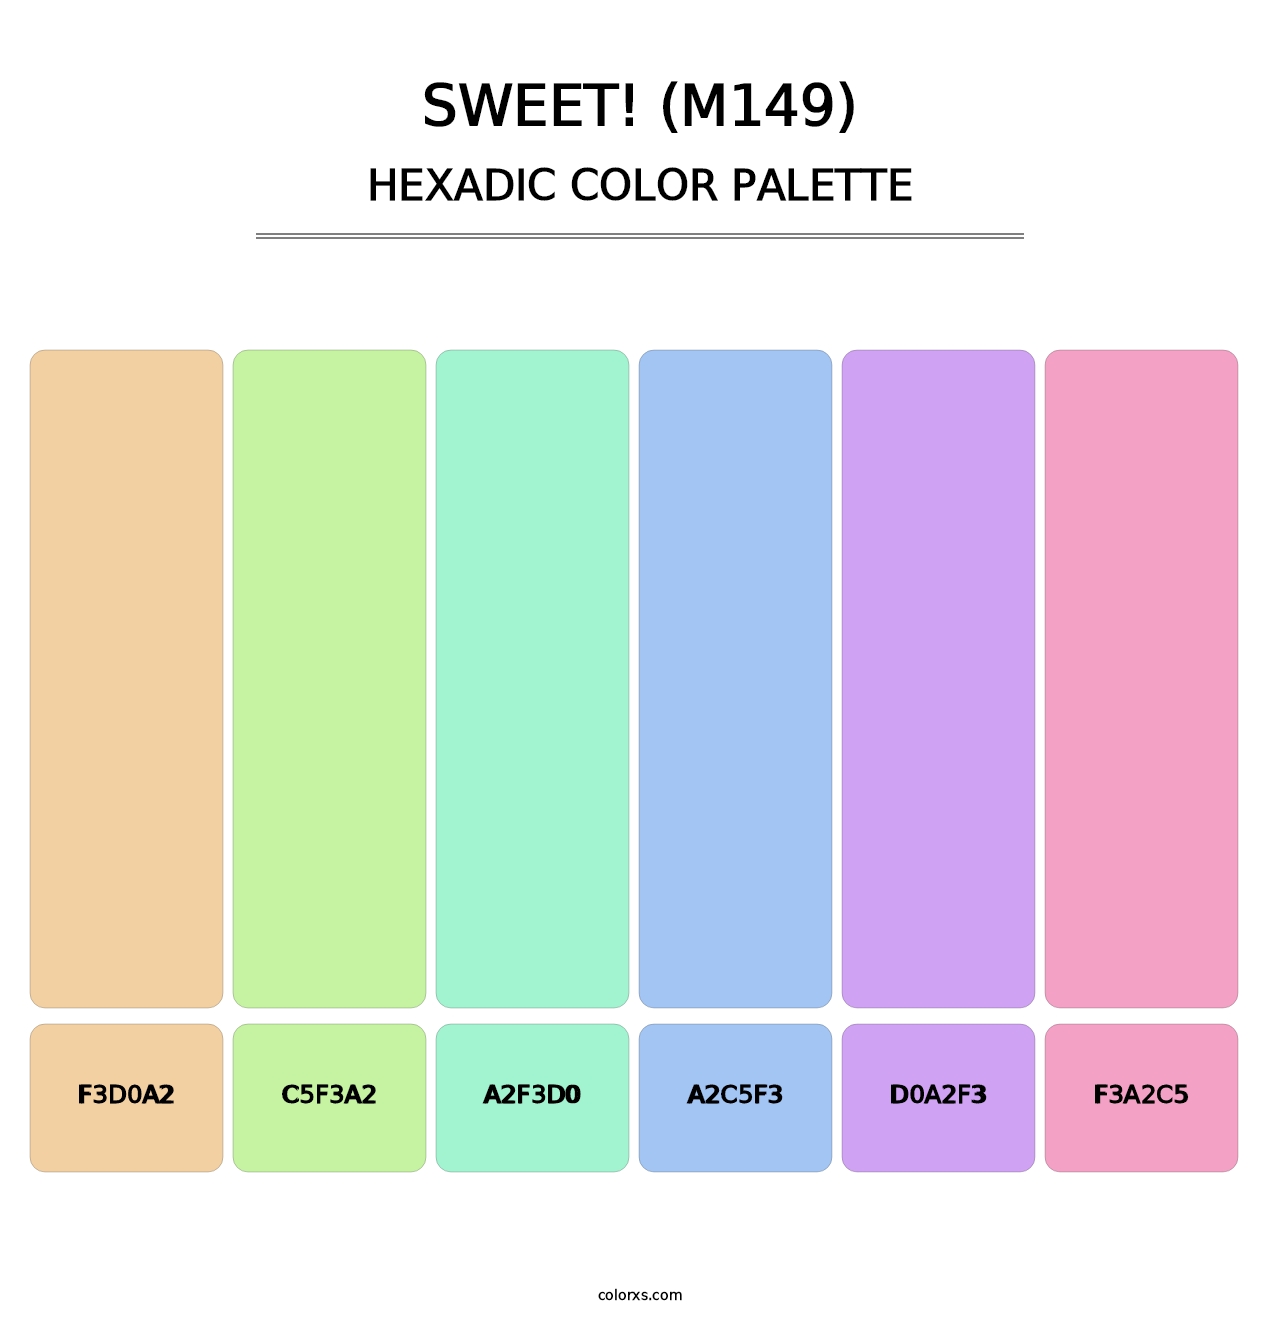 sweet! (M149) - Hexadic Color Palette